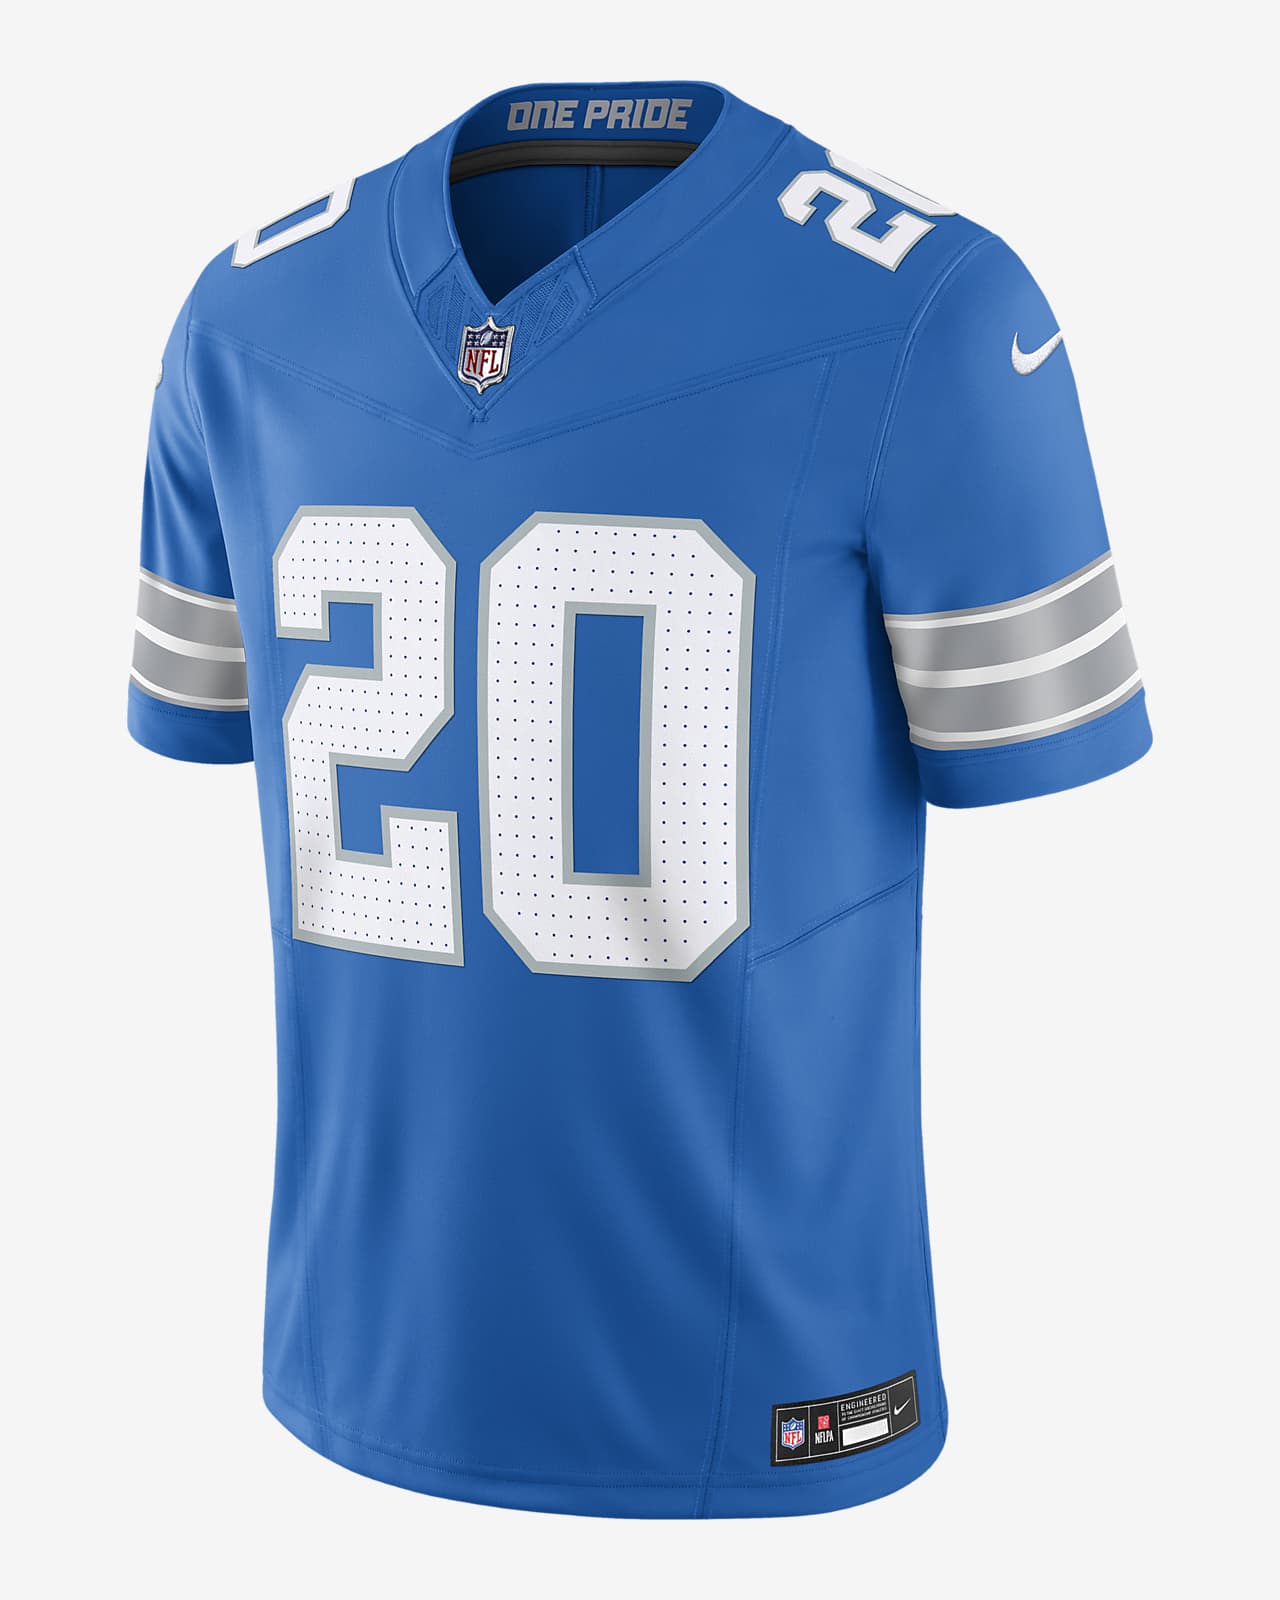 Jersey de fútbol americano Nike Dri-FIT de la NFL Limited para hombre Barry Sanders Detroit Lions